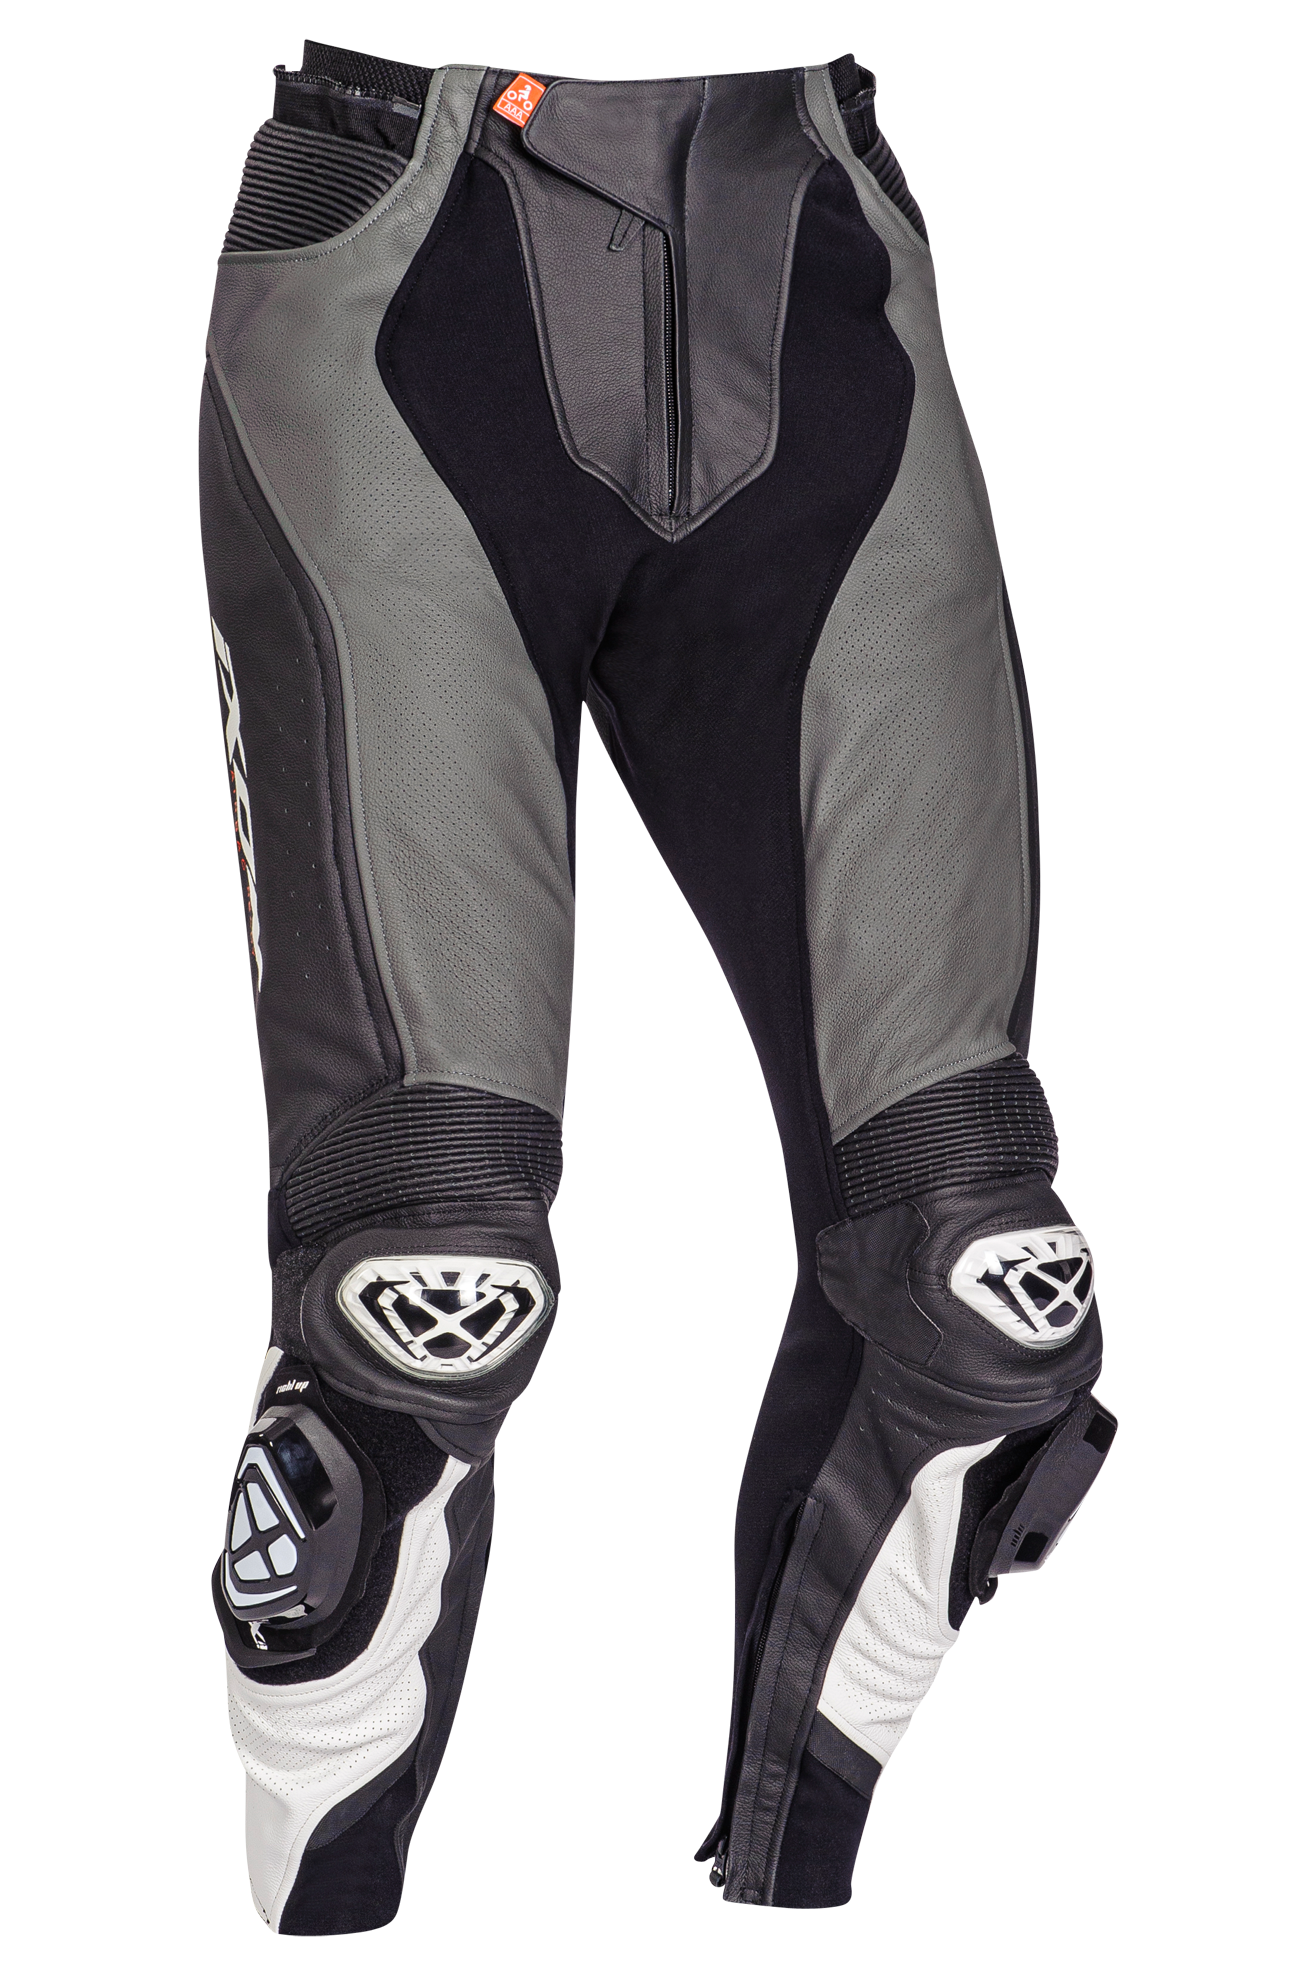 Ixon Pantalones de Moto  Vendetta Evo Negro-Gris-Blanco